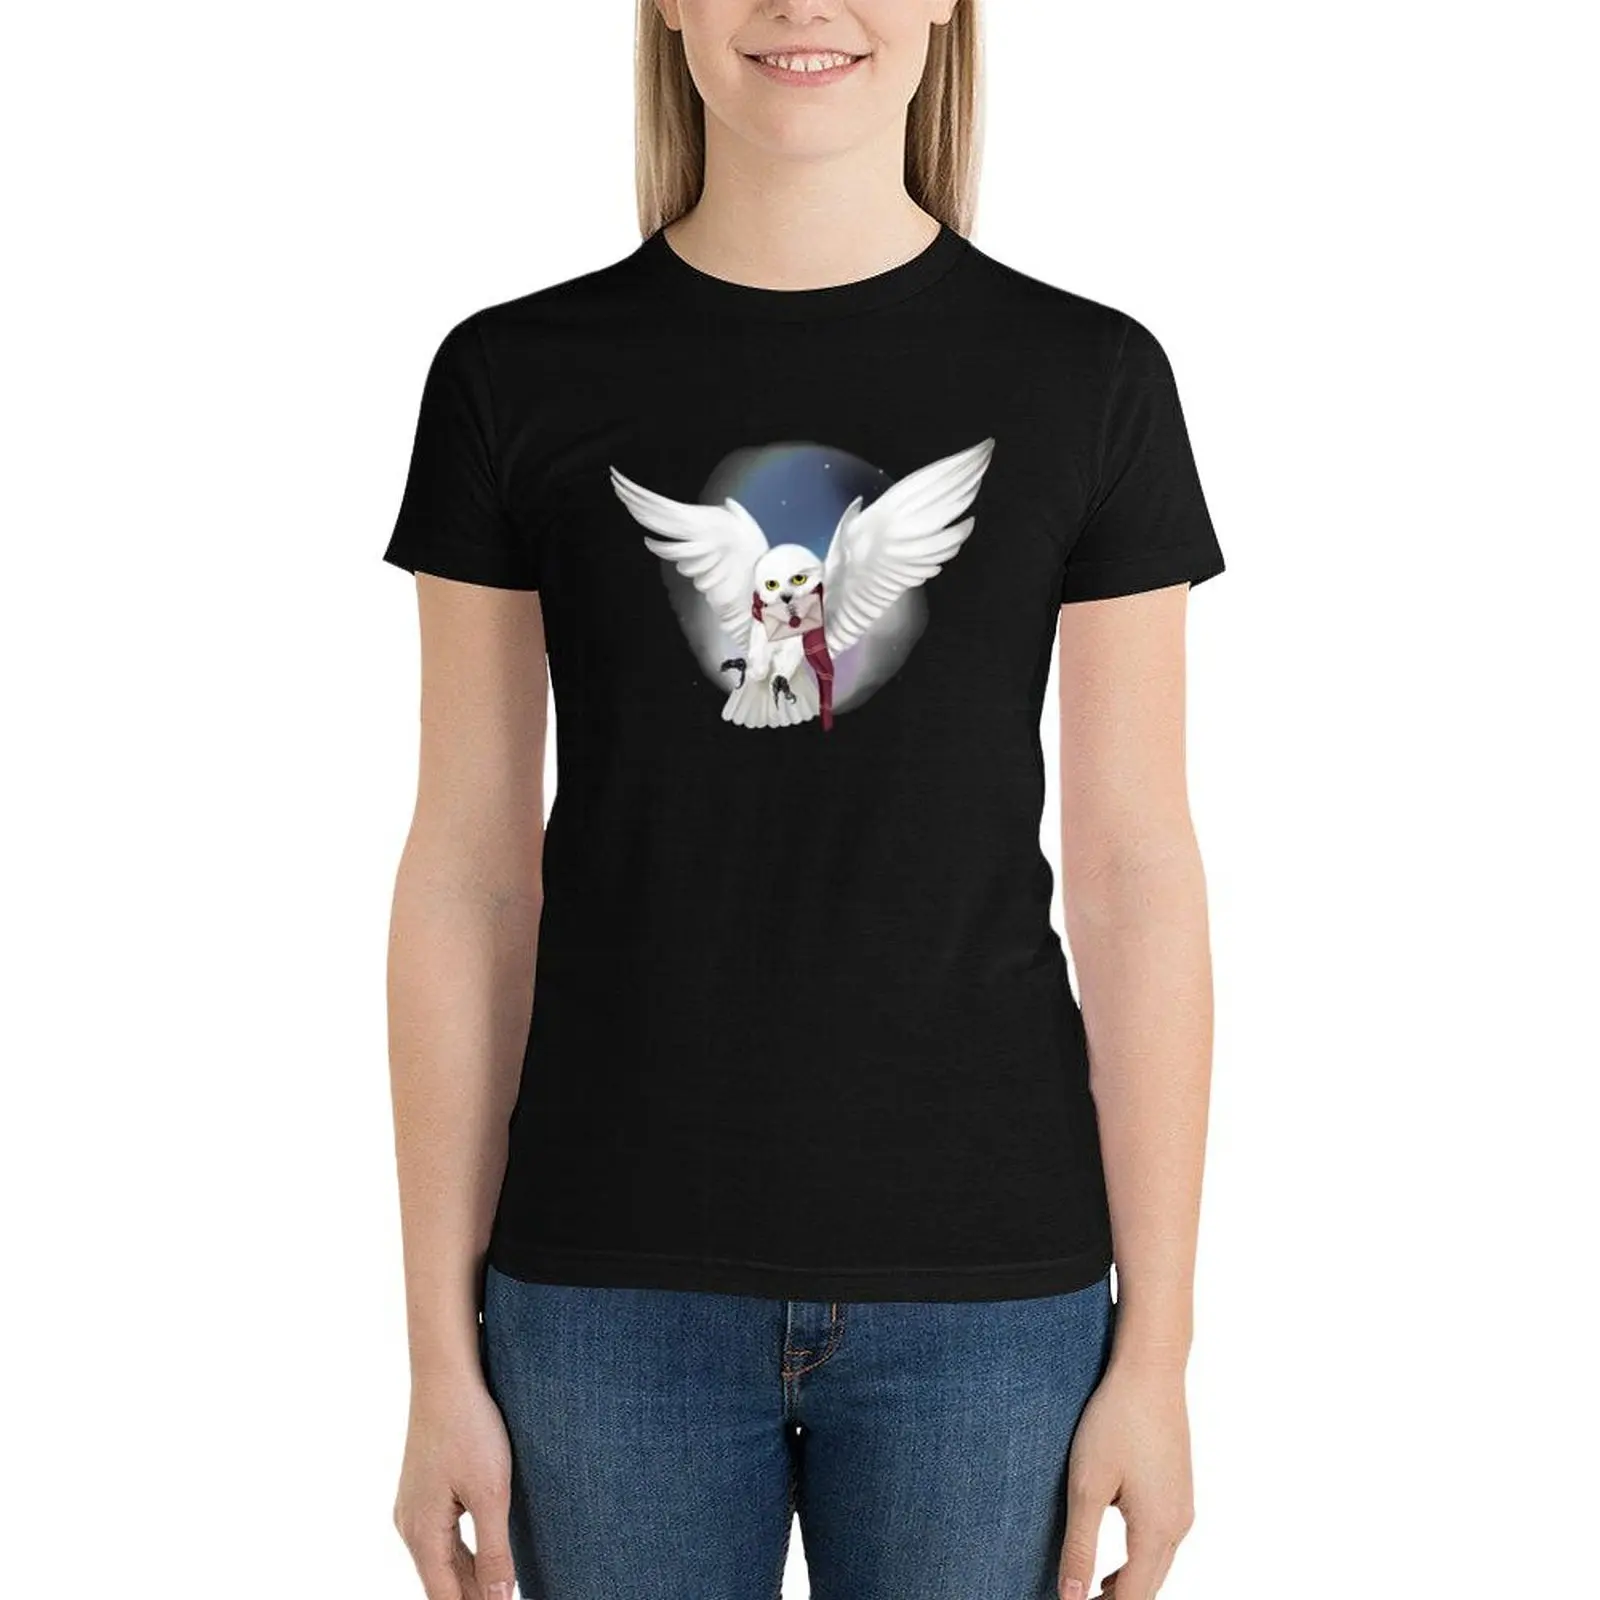 

Snowy White Owl T-Shirt cute clothes summer top Woman fashion